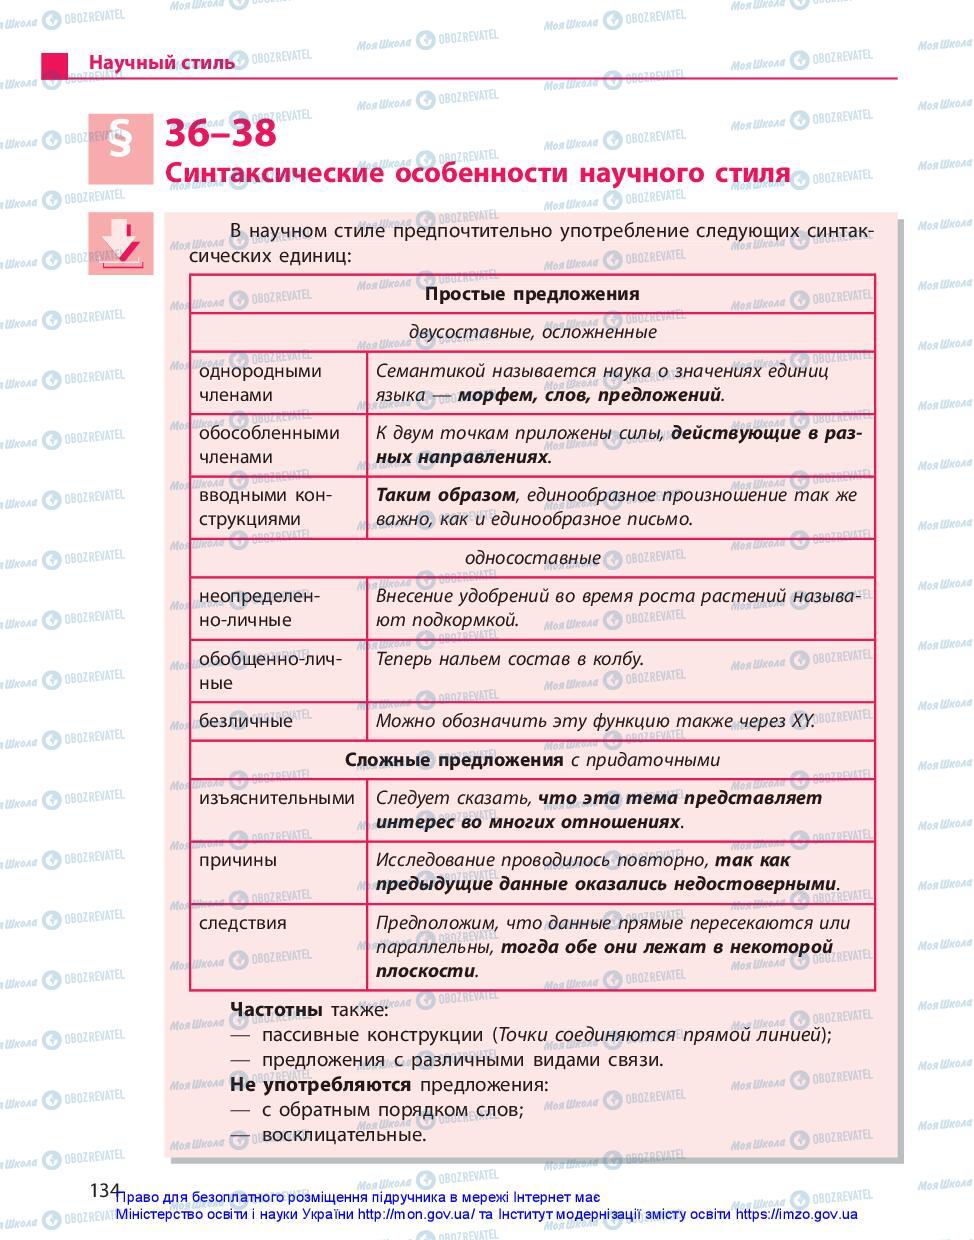 Підручники Російська мова 10 клас сторінка 134